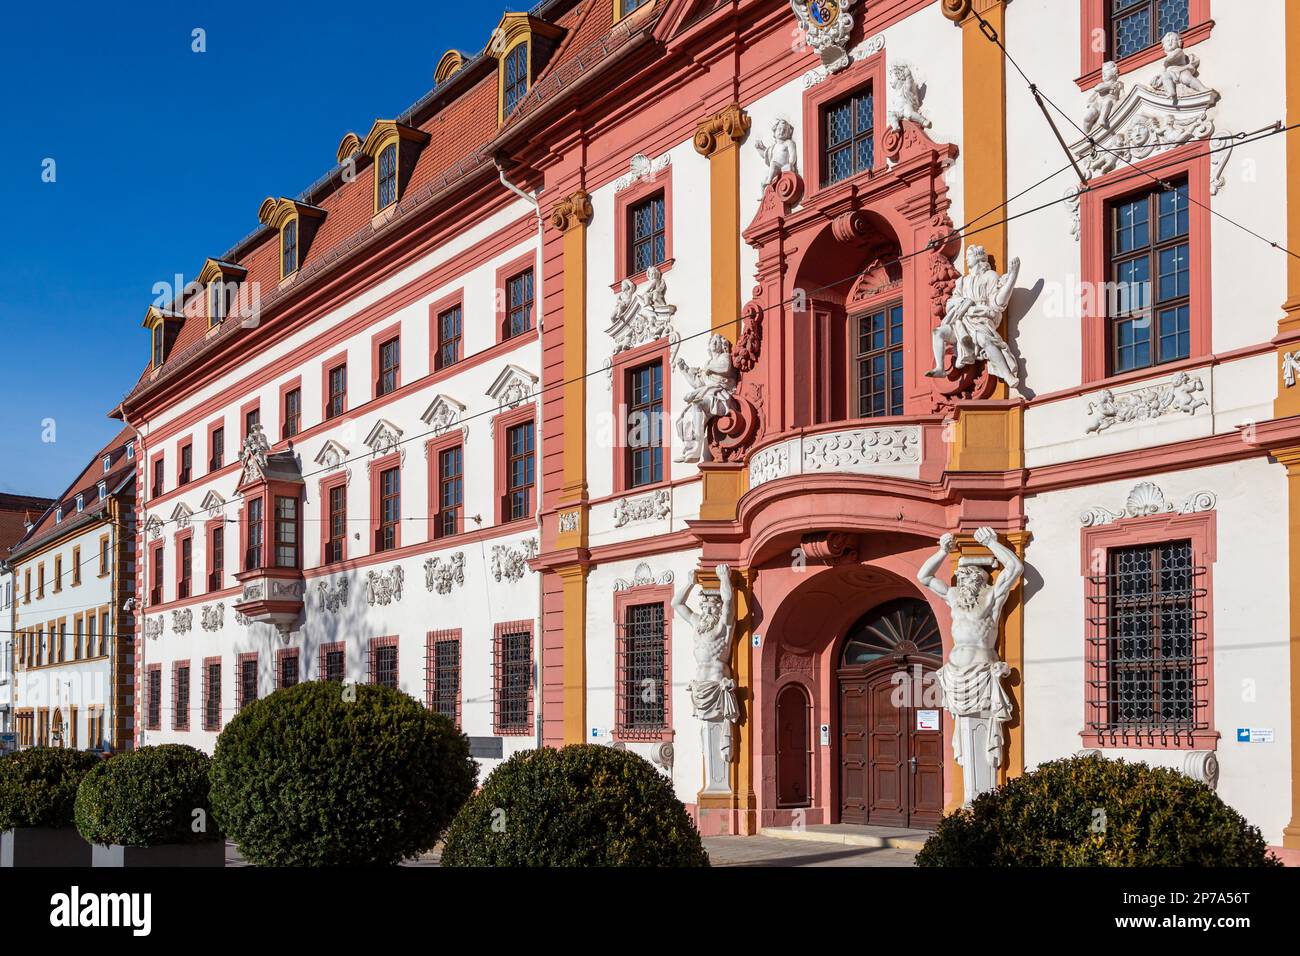 Impressioni fotografiche da Erfurt, capitale della Turingia Foto Stock